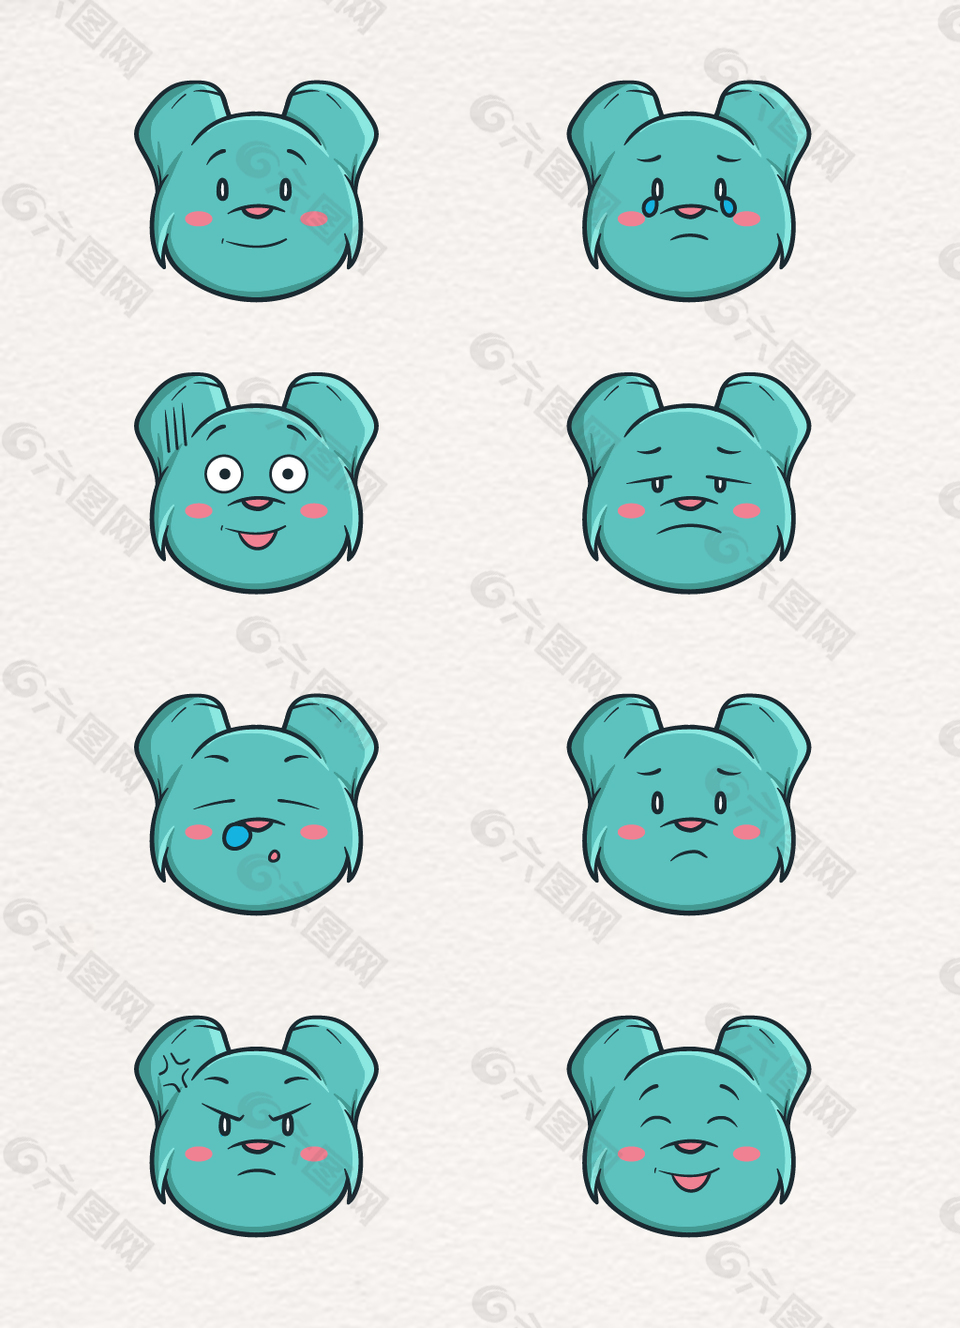 蓝色熊表情头像矢量素材